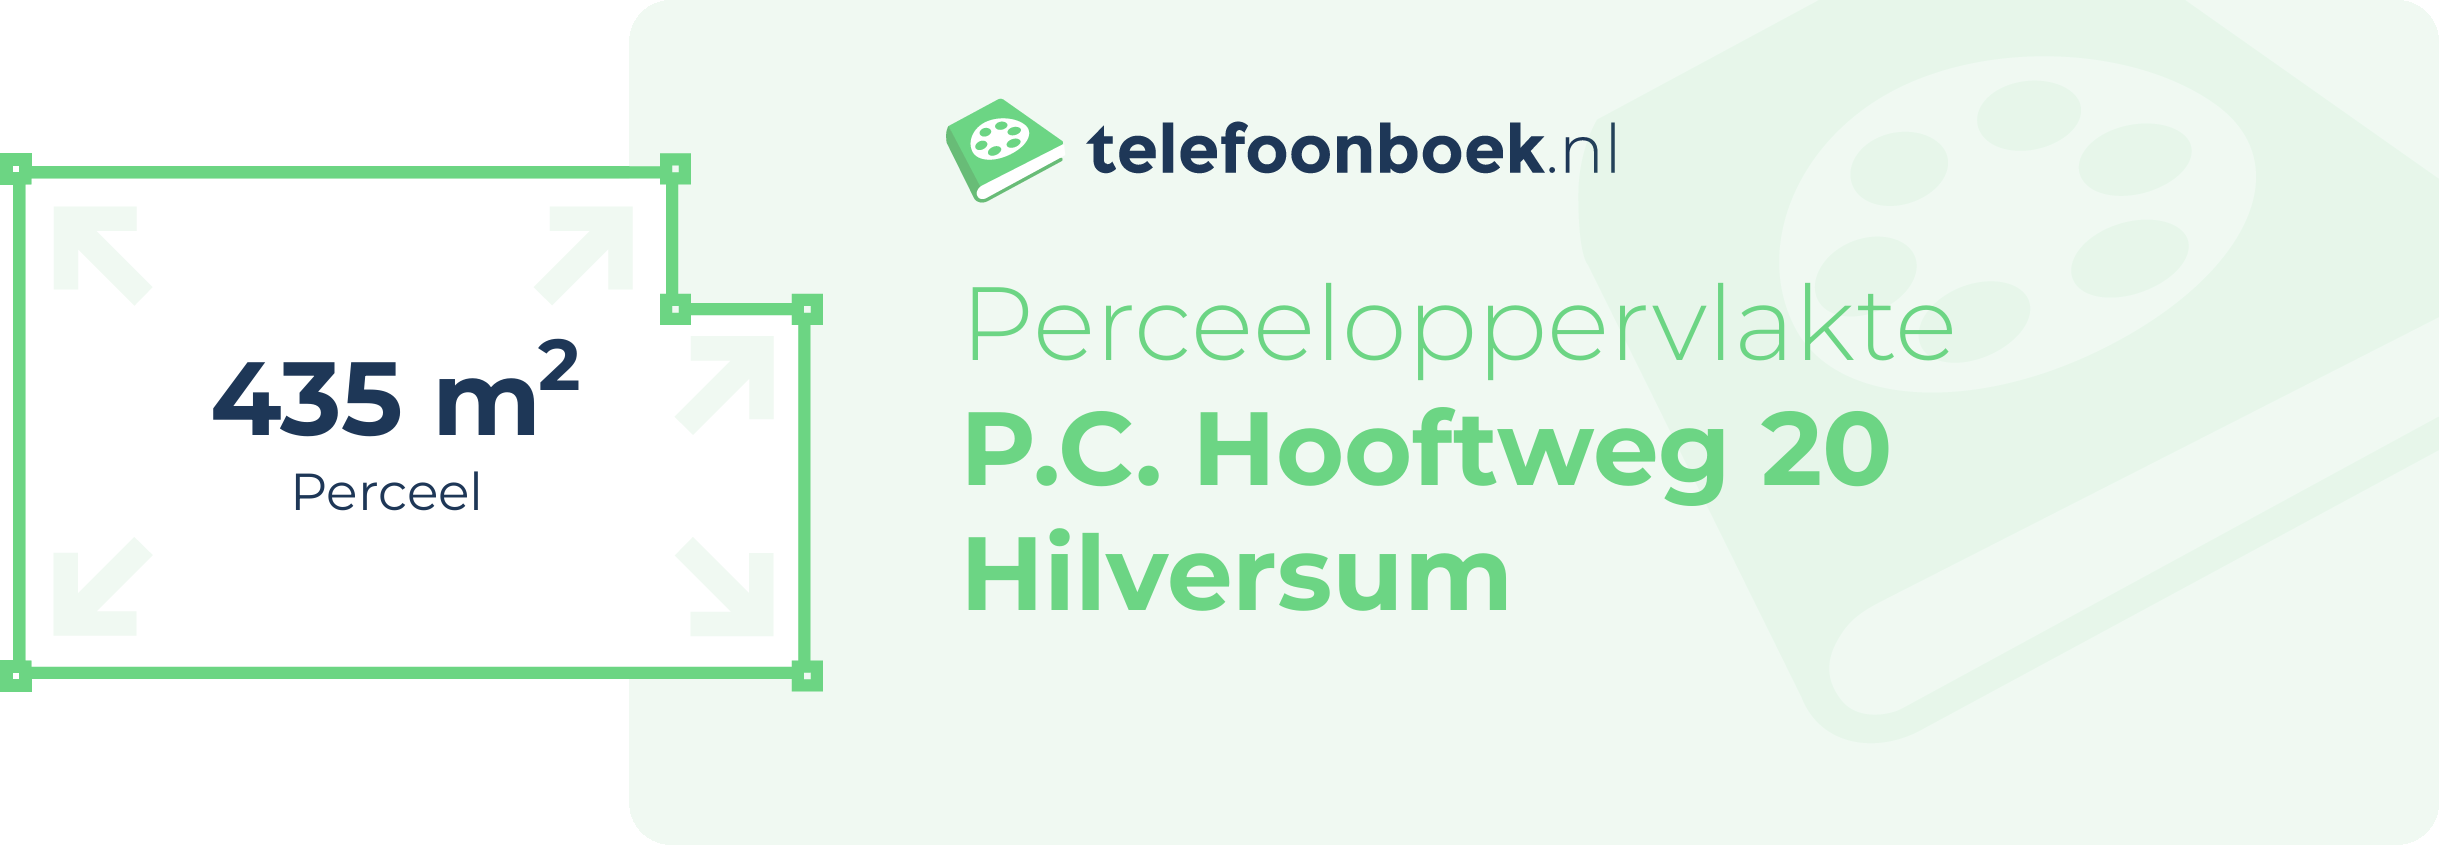 Perceeloppervlakte P.C. Hooftweg 20 Hilversum